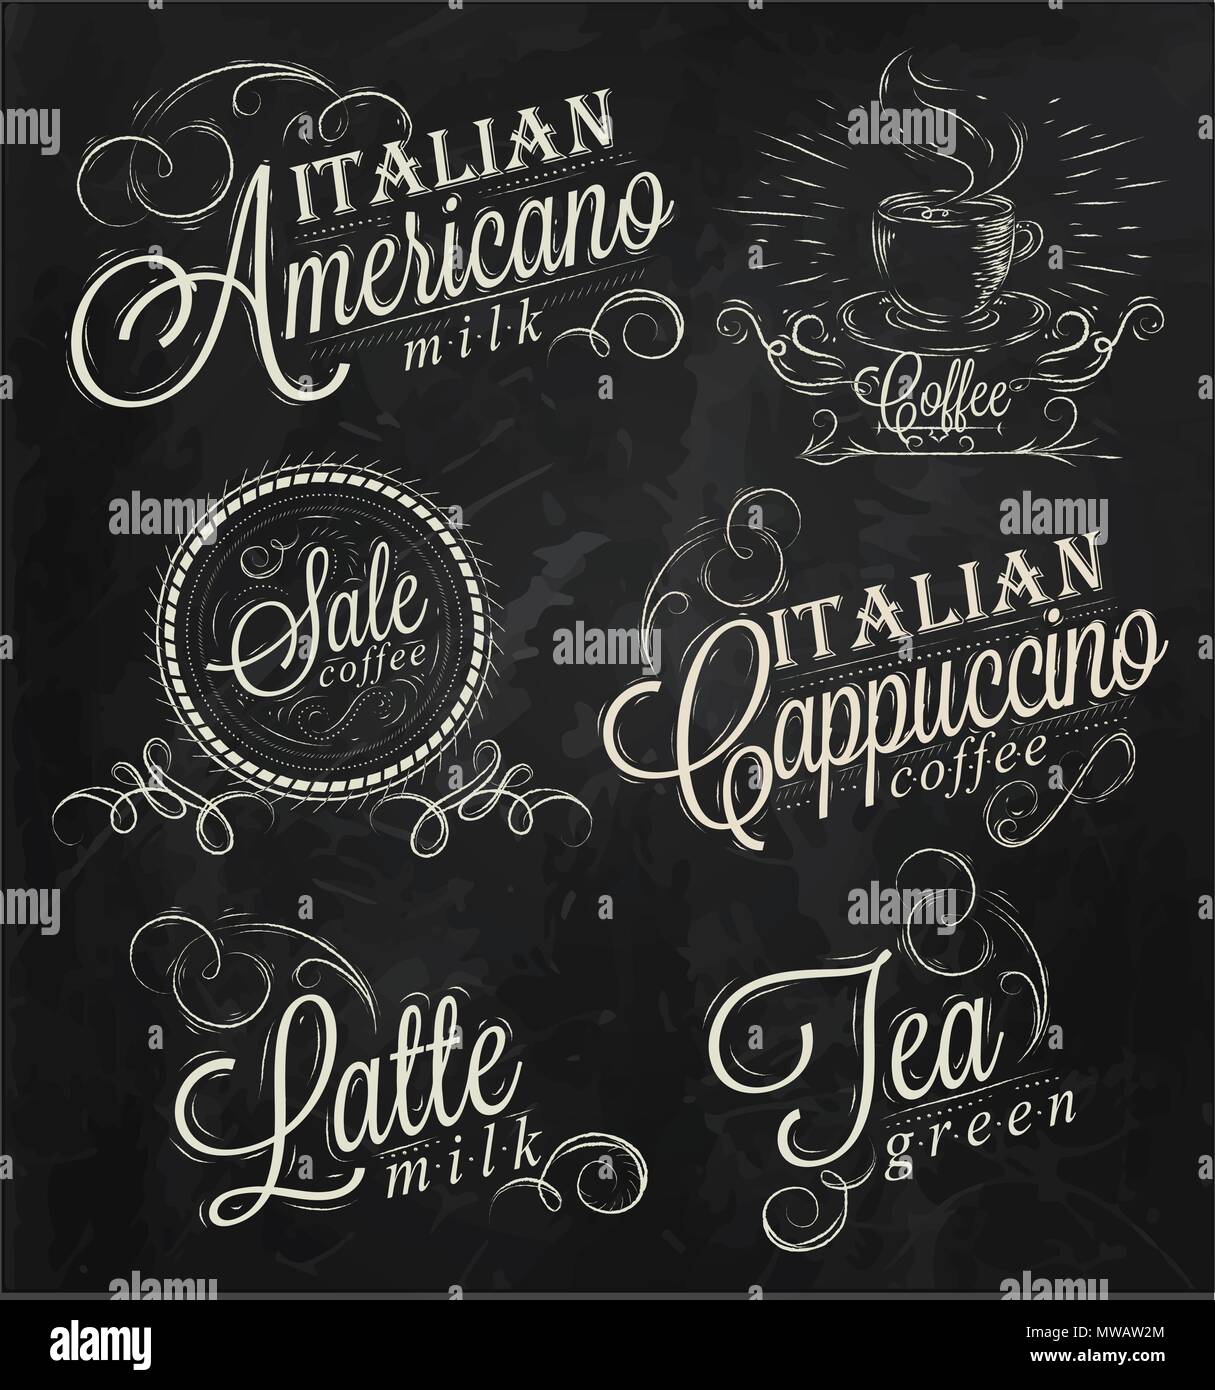 Nomi di bevande di caffè espresso, latte, iscrizioni stilizzata in gesso su una lavagna Illustrazione Vettoriale